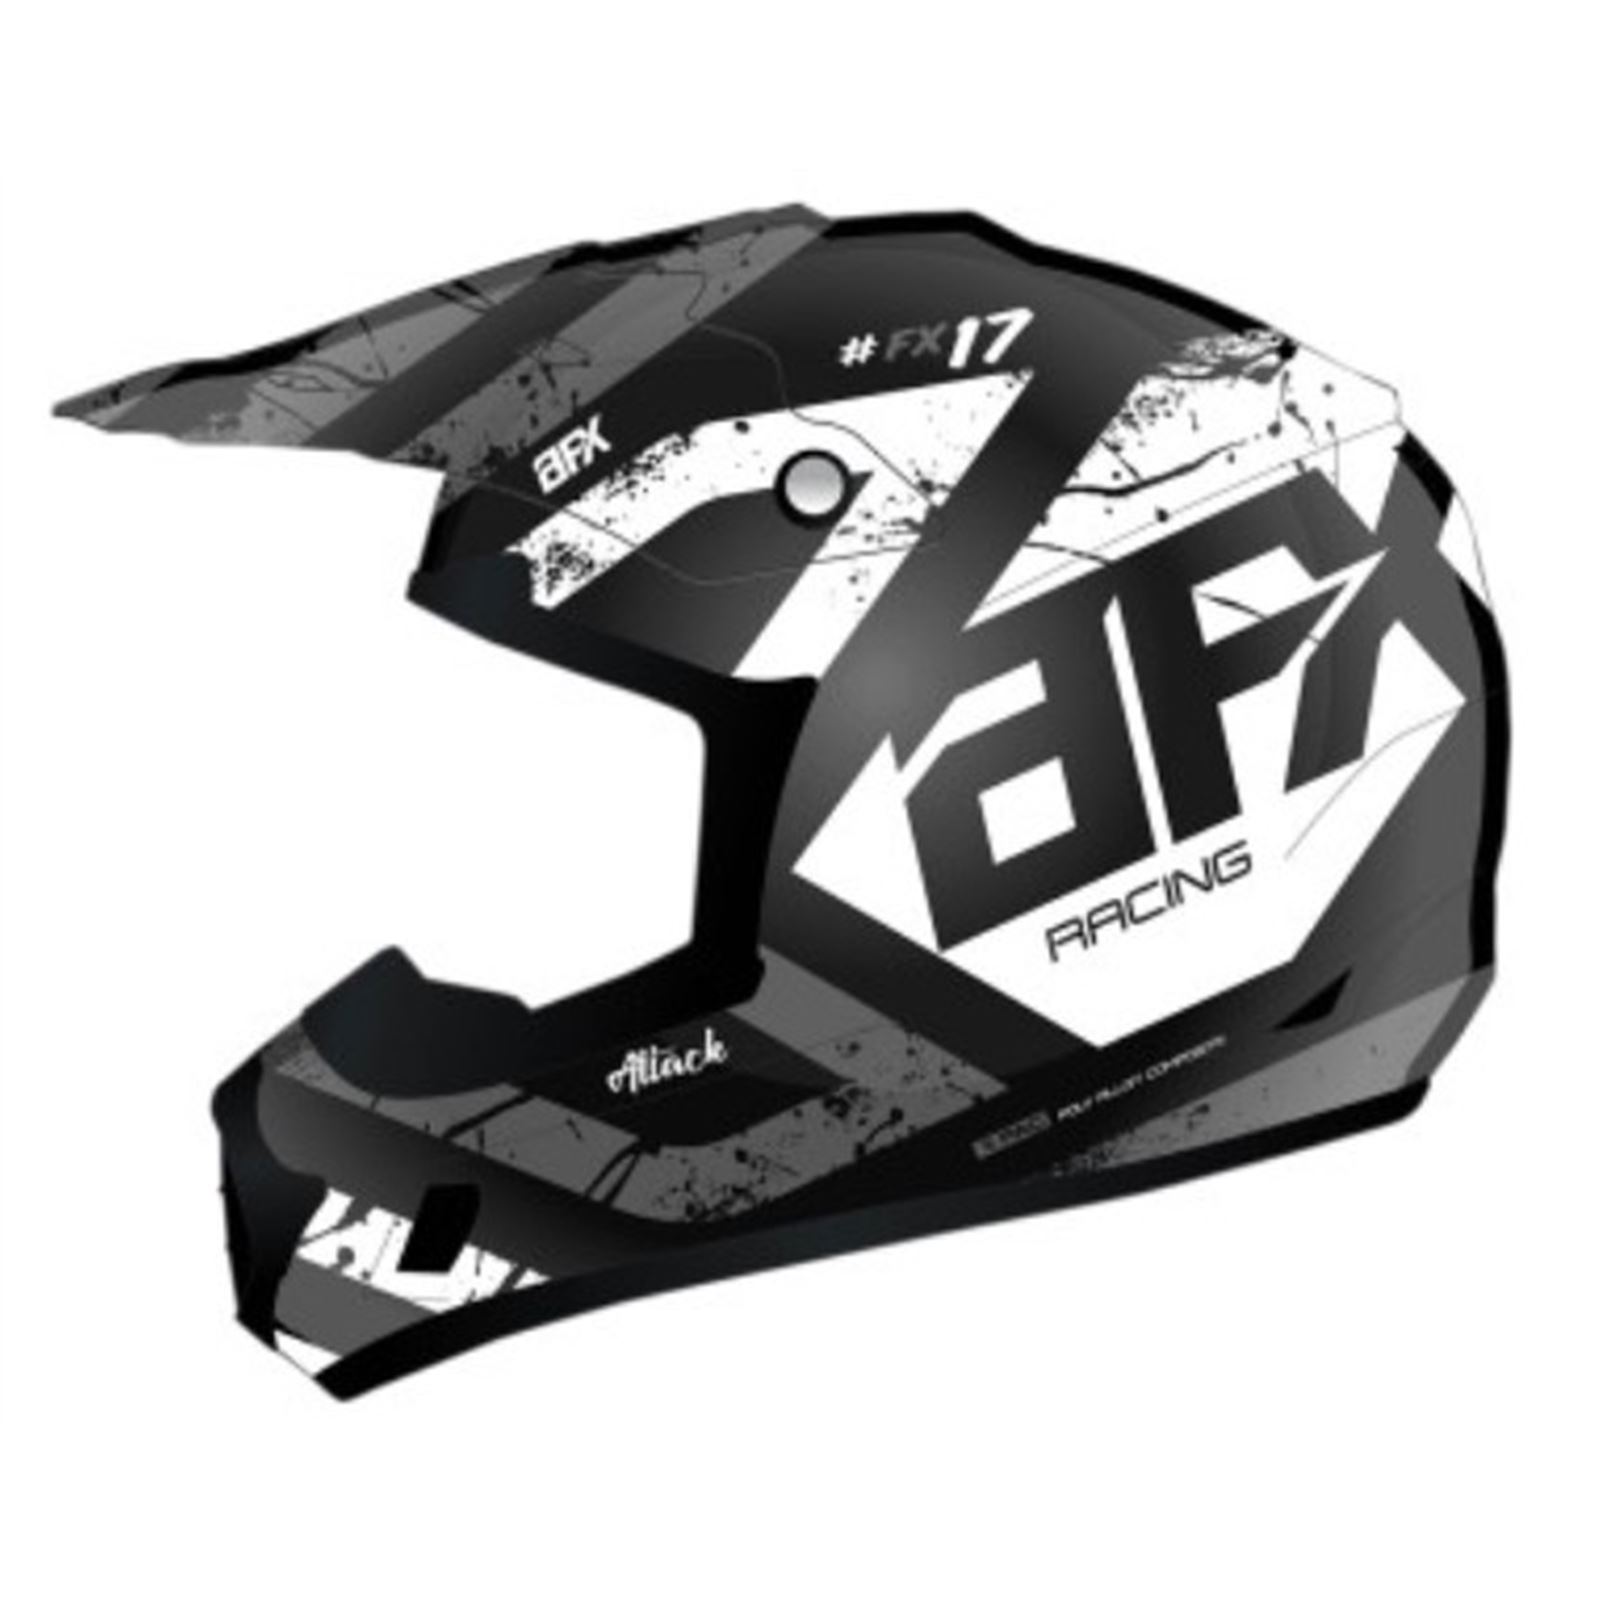 AFX FX-17 Helmet - Attack - Matte Black/Silver - Large